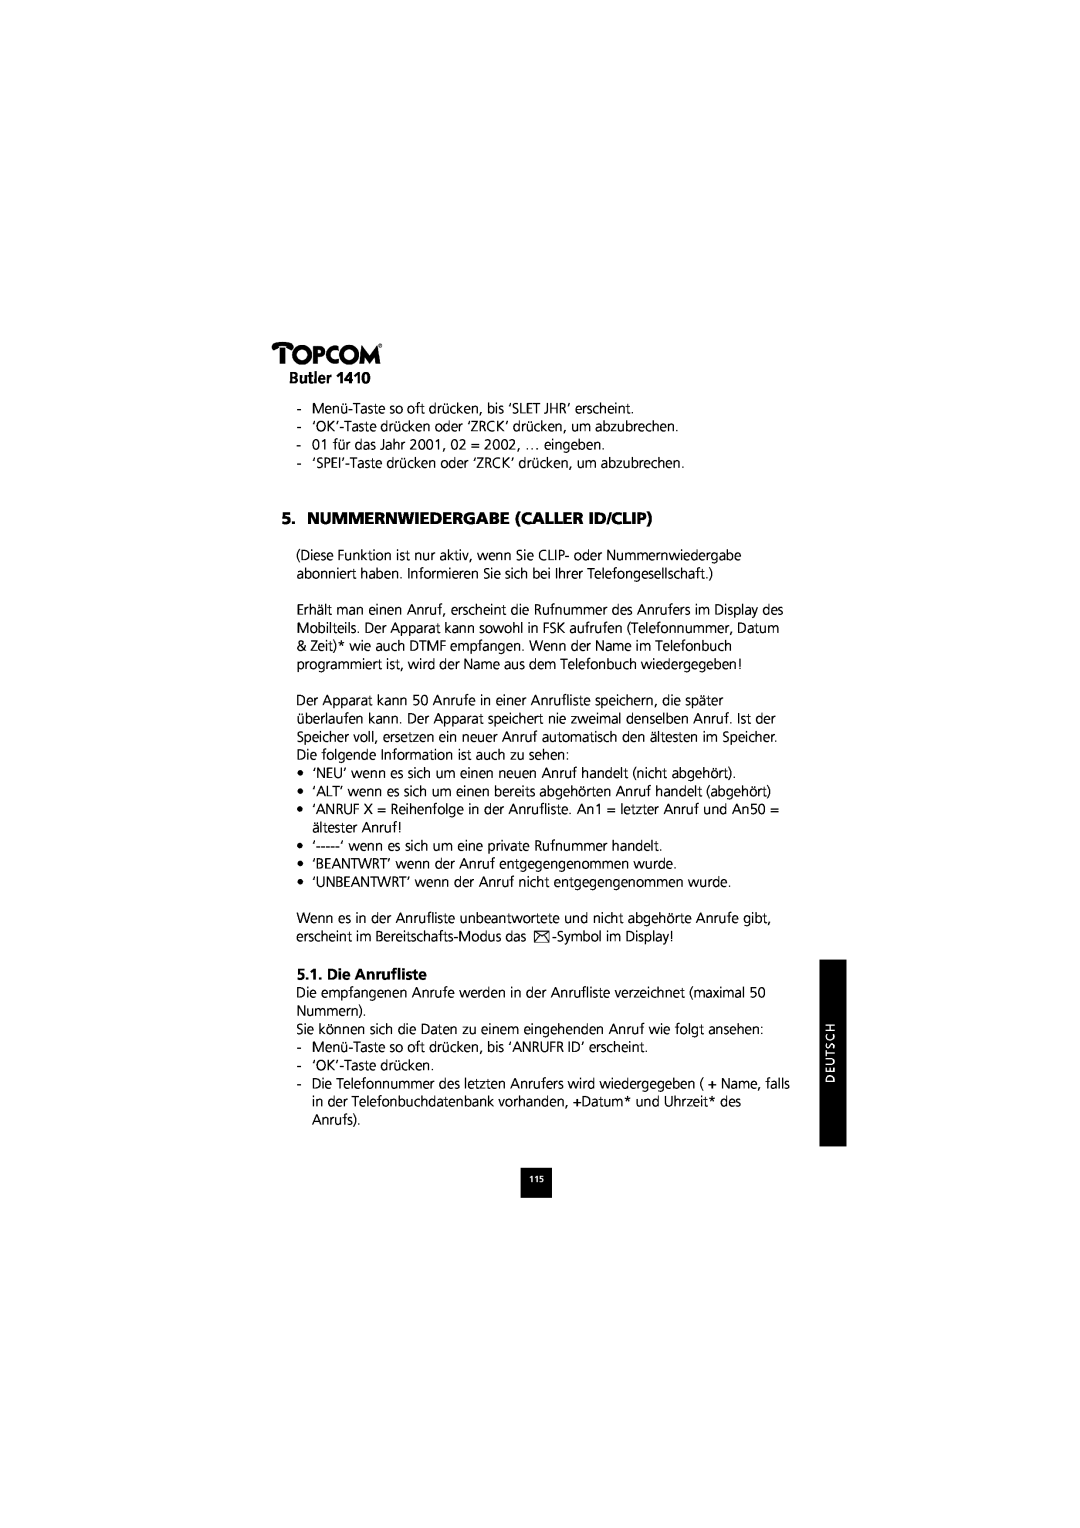 Topcom 1410 manual Nummernwiedergabe Caller Id/Clip, Die Anrufliste, Butler 